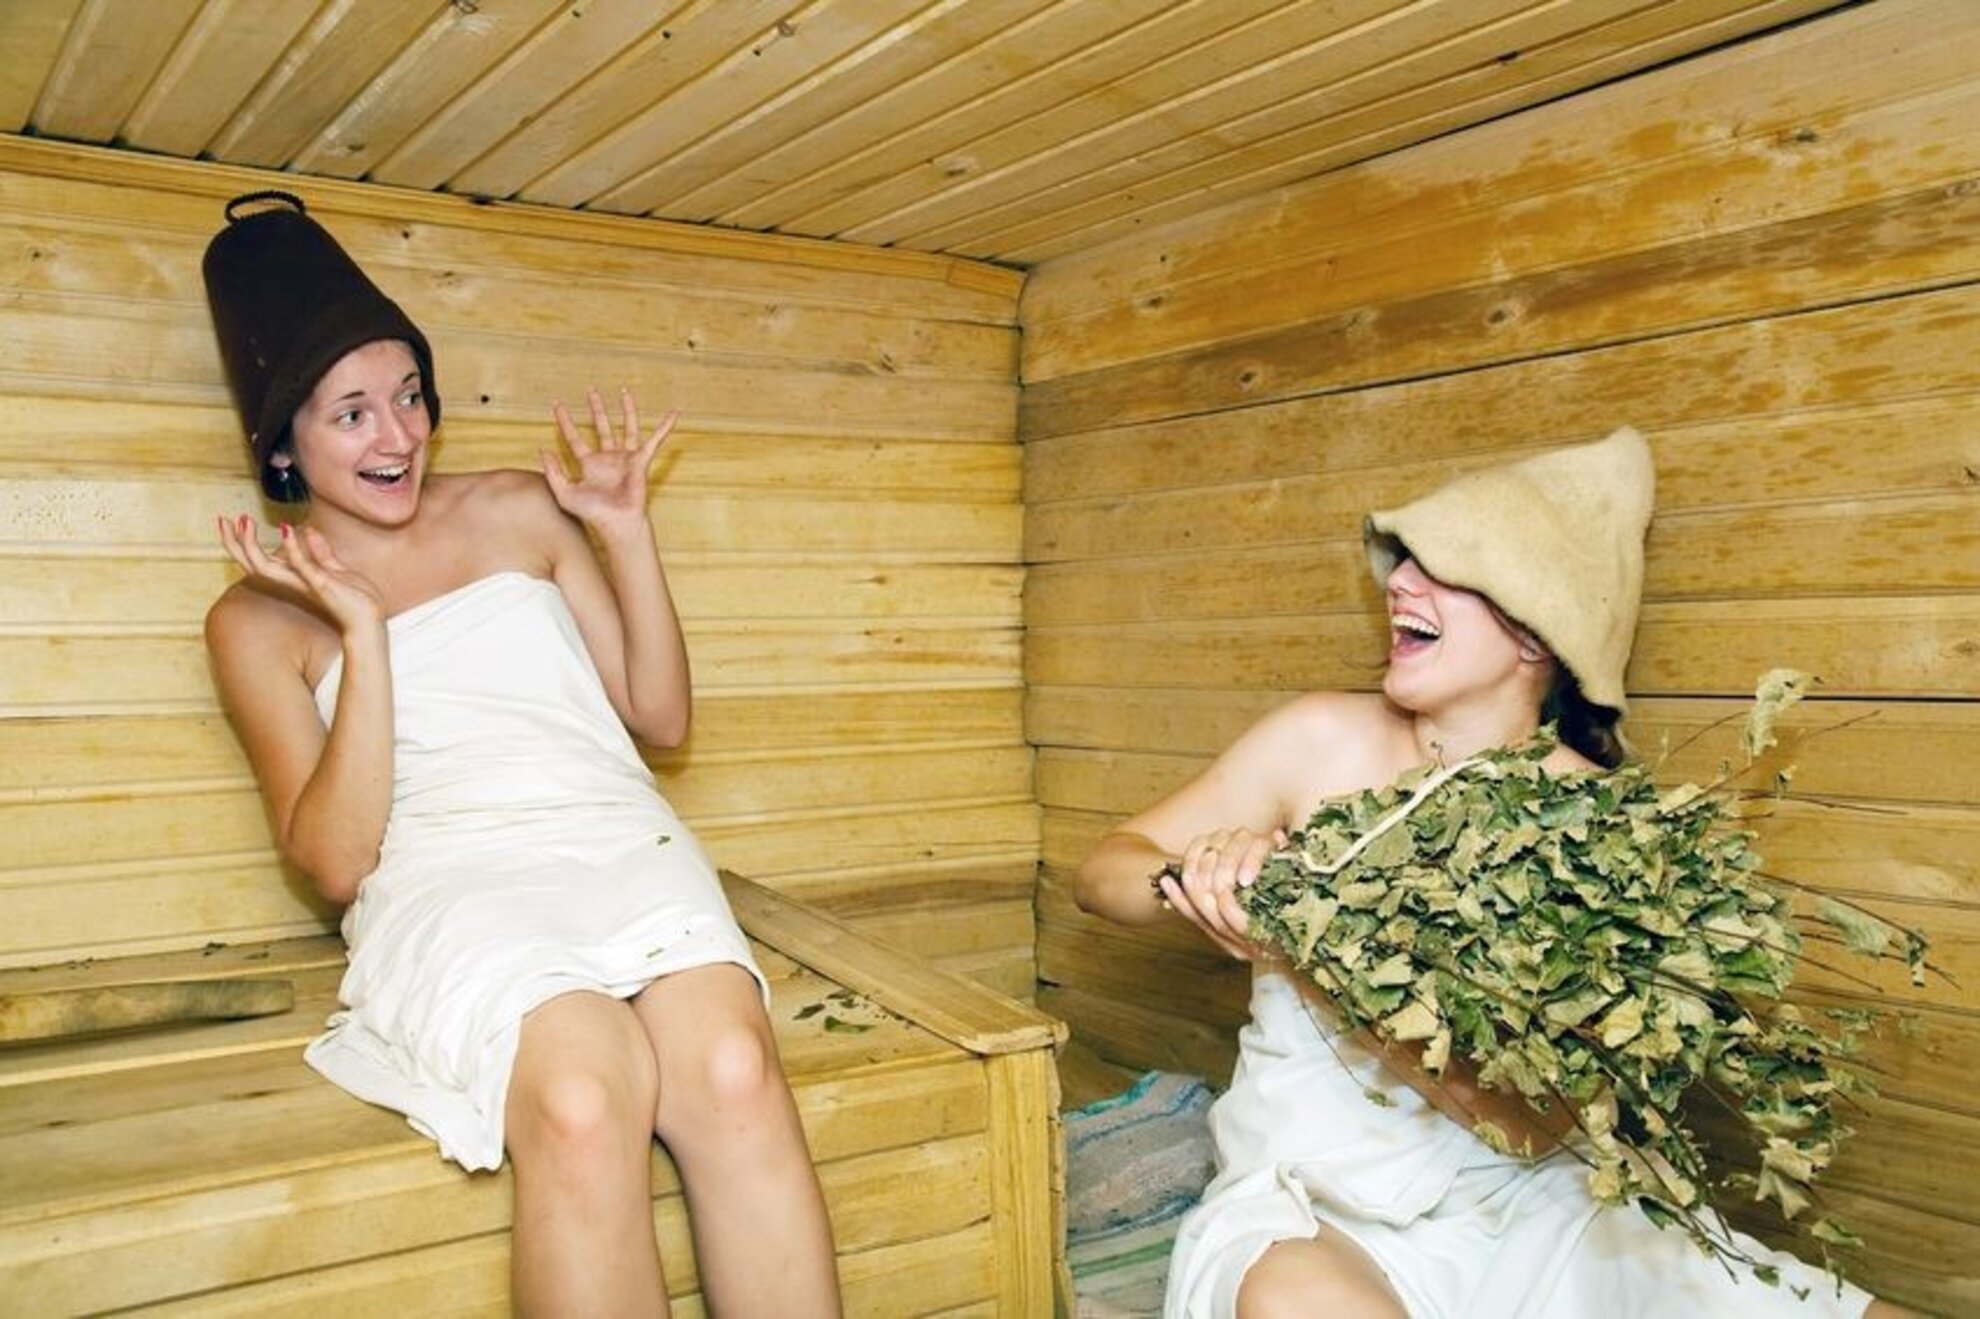 Сисястые девушки отдыхают в банях и деревенских домах